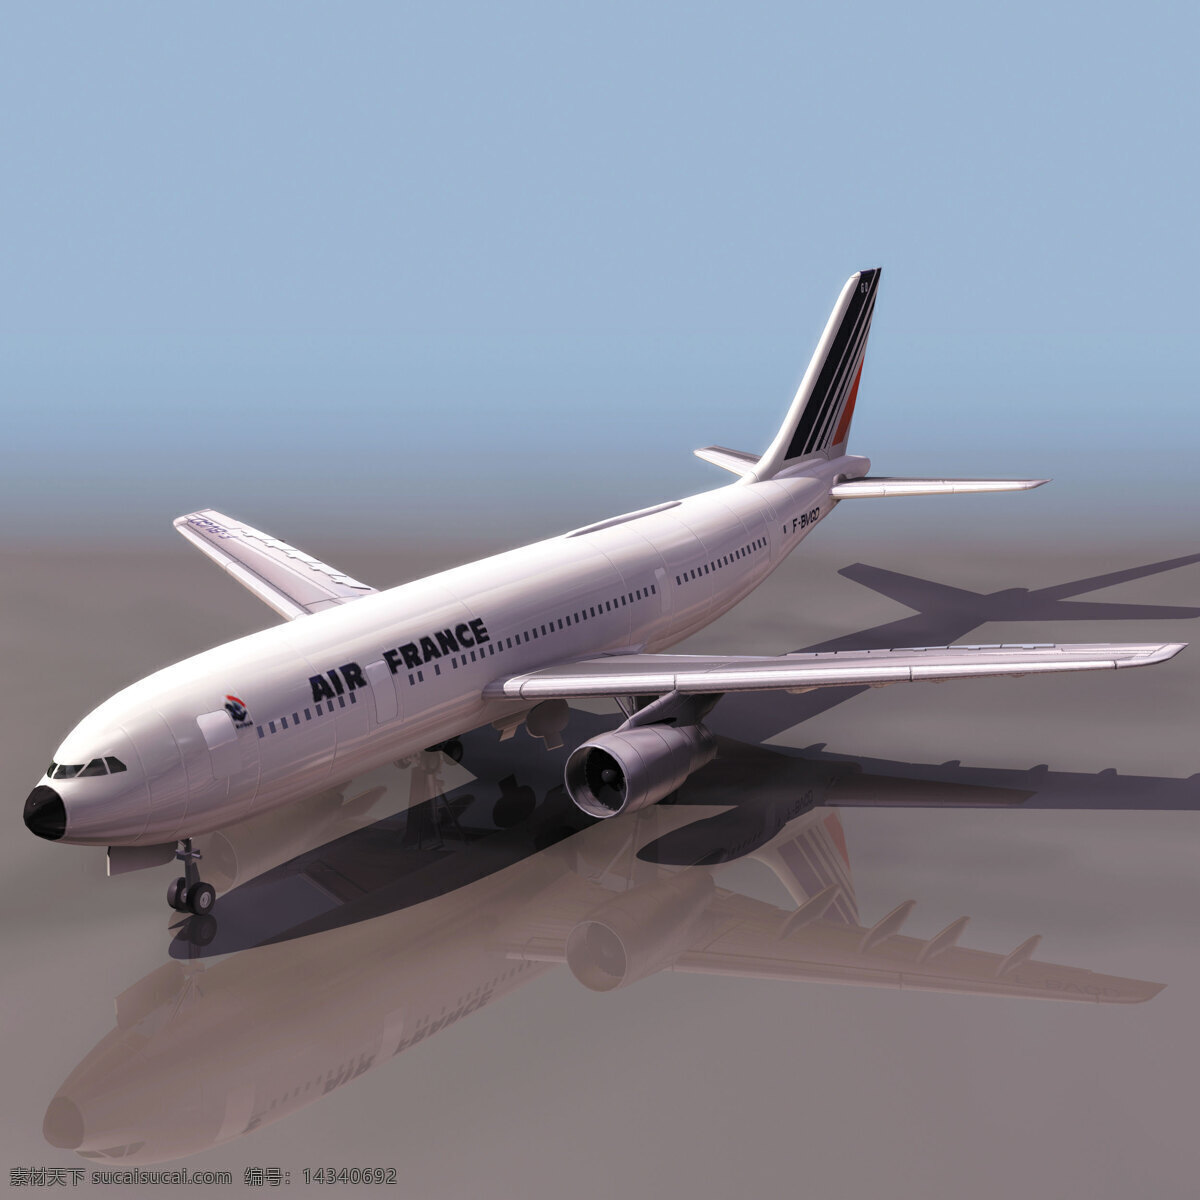 空中 巴士 模型 3d模型 飞机 空中巴士模型 3d模型素材 其他3d模型